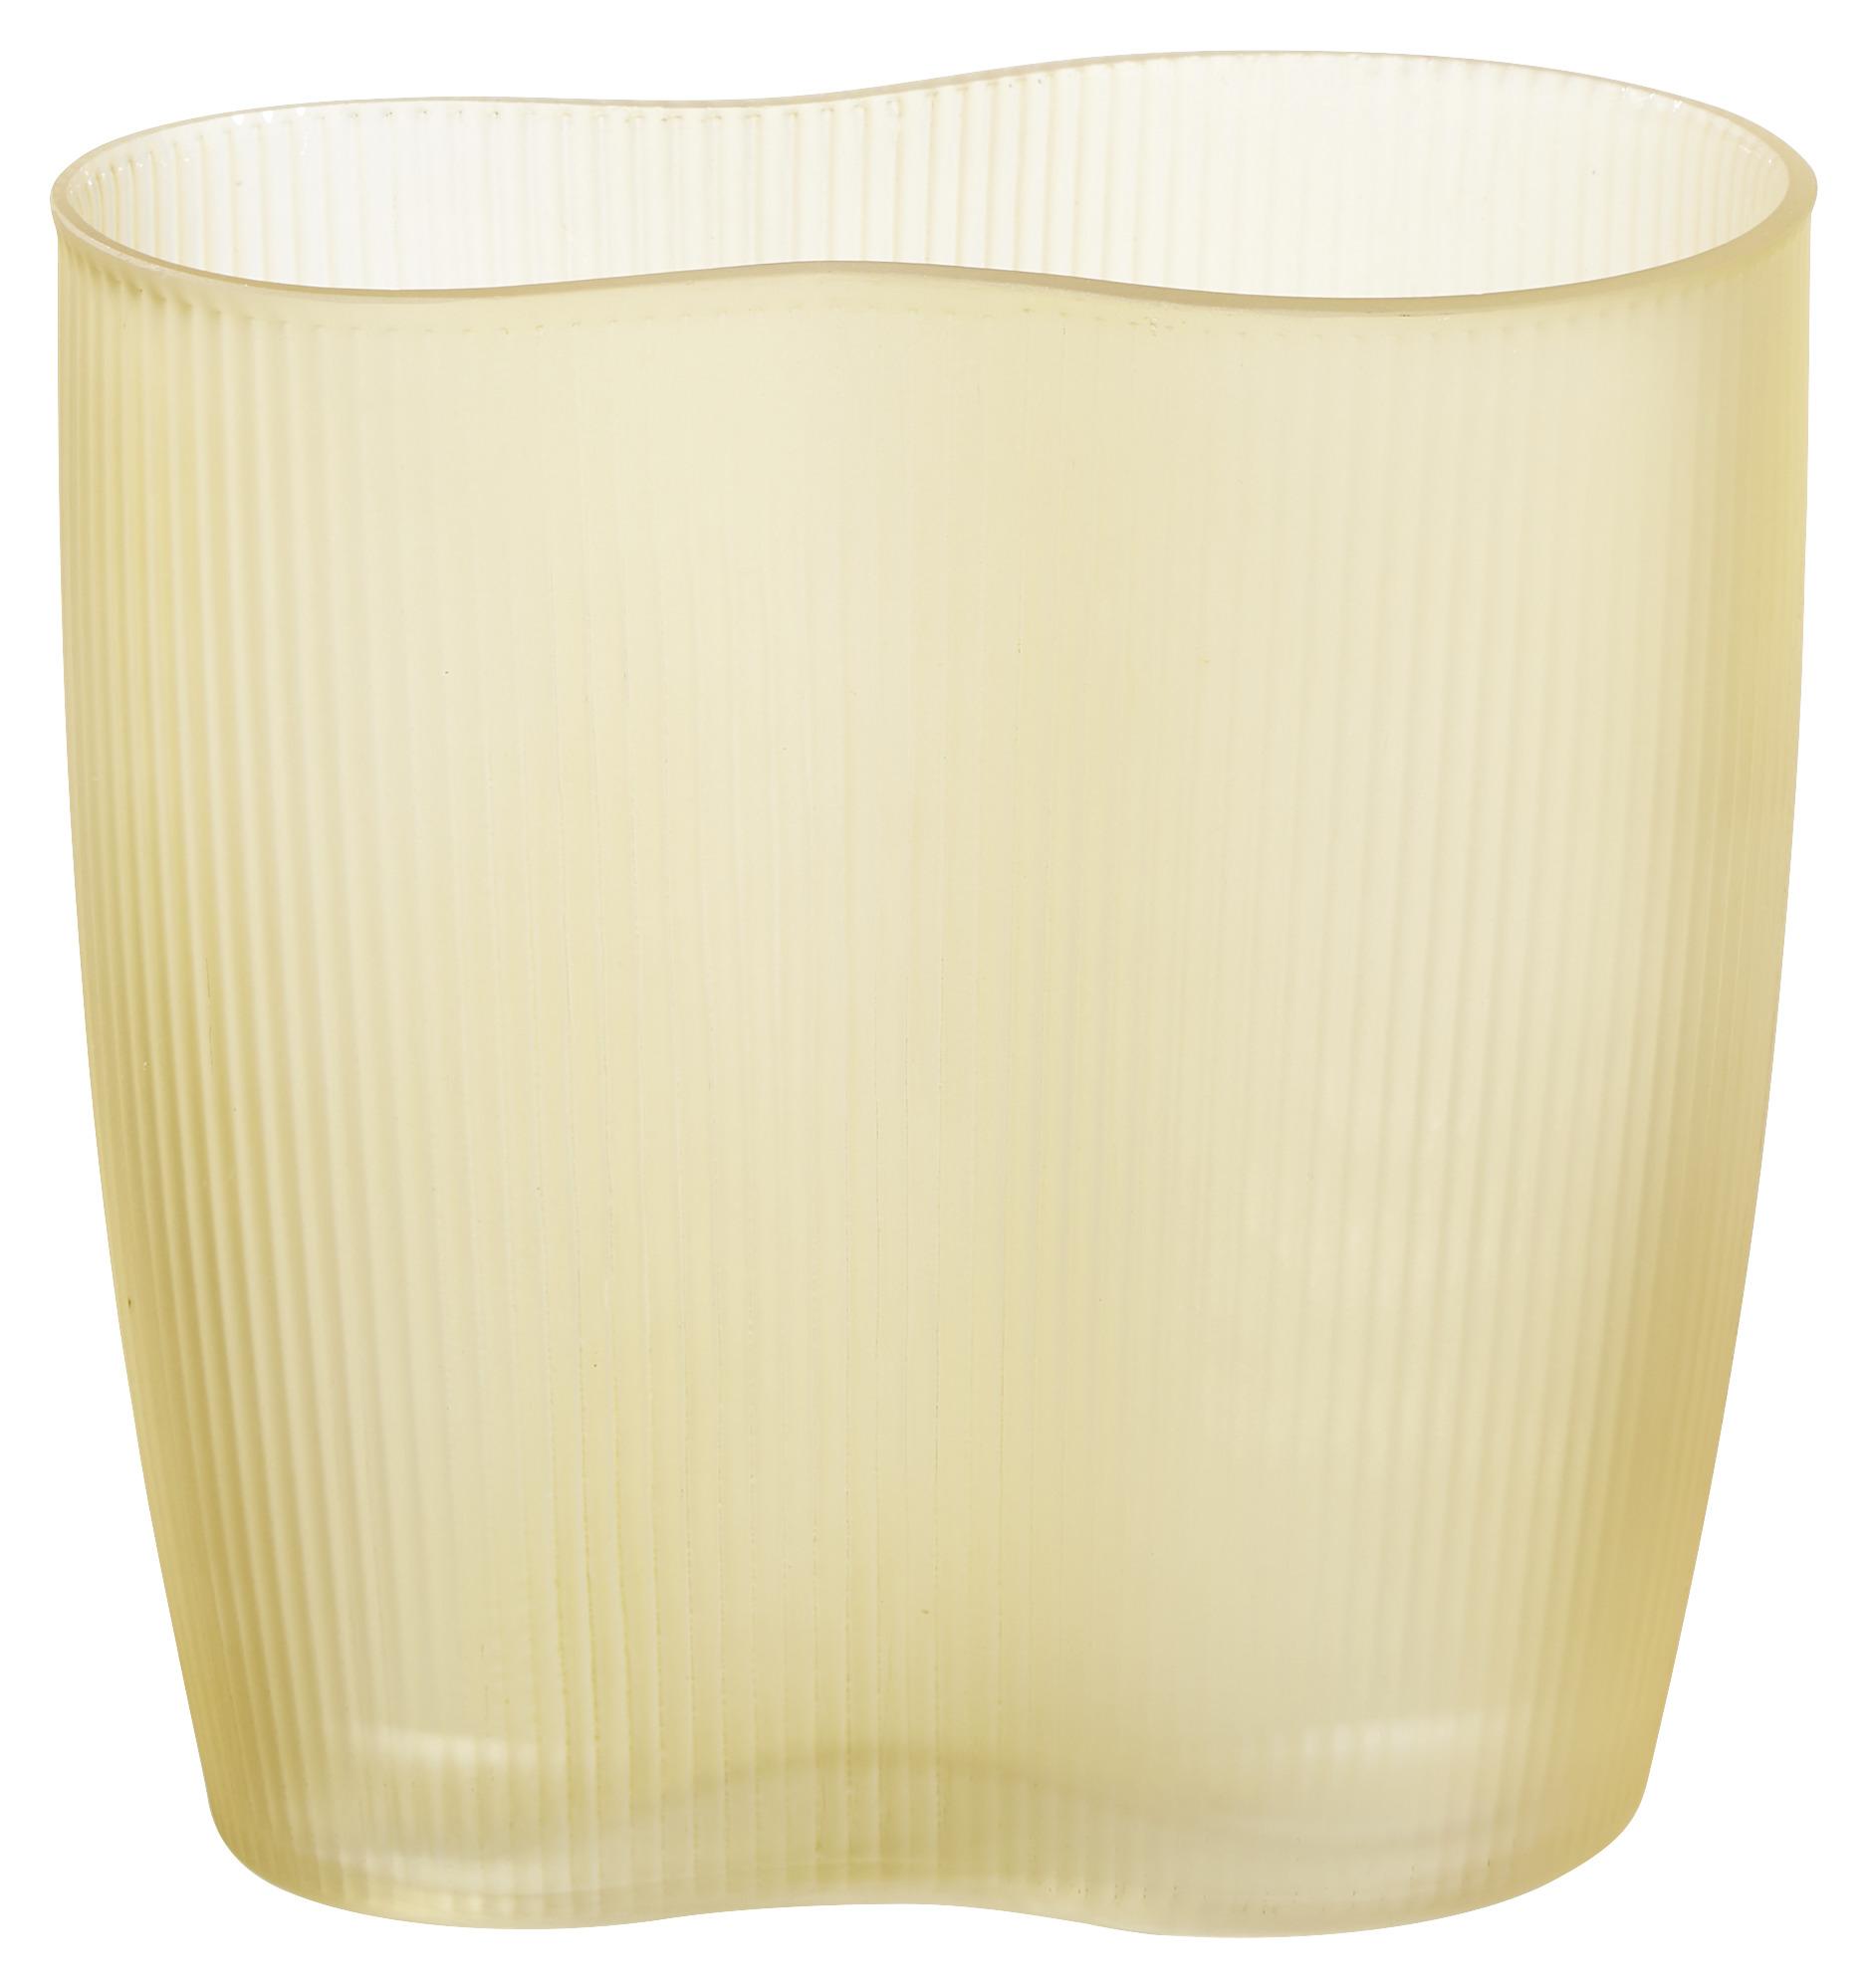 Vase Sahara aus Glas in Bernsteinfarben - Bernsteinfarben, MODERN, Glas (19/12/20cm) - Modern Living